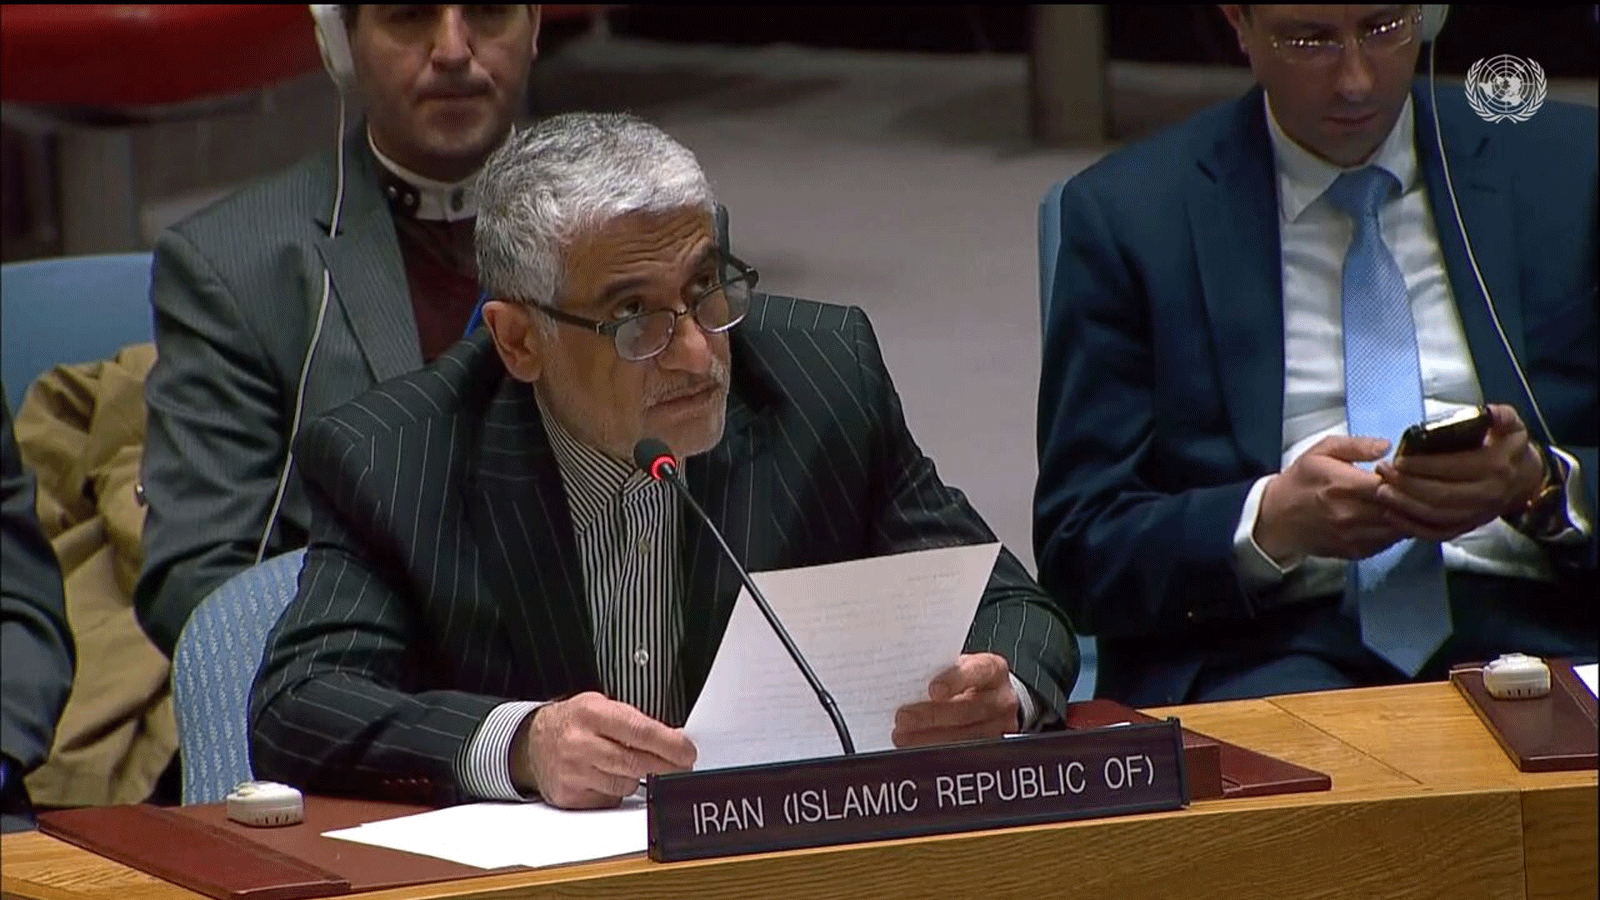 السفير والمندوب الدائم للجمهورية الاسلامية الايرانية لدى منظمة الأمم المتحدة، أمير سعيد إيرواني